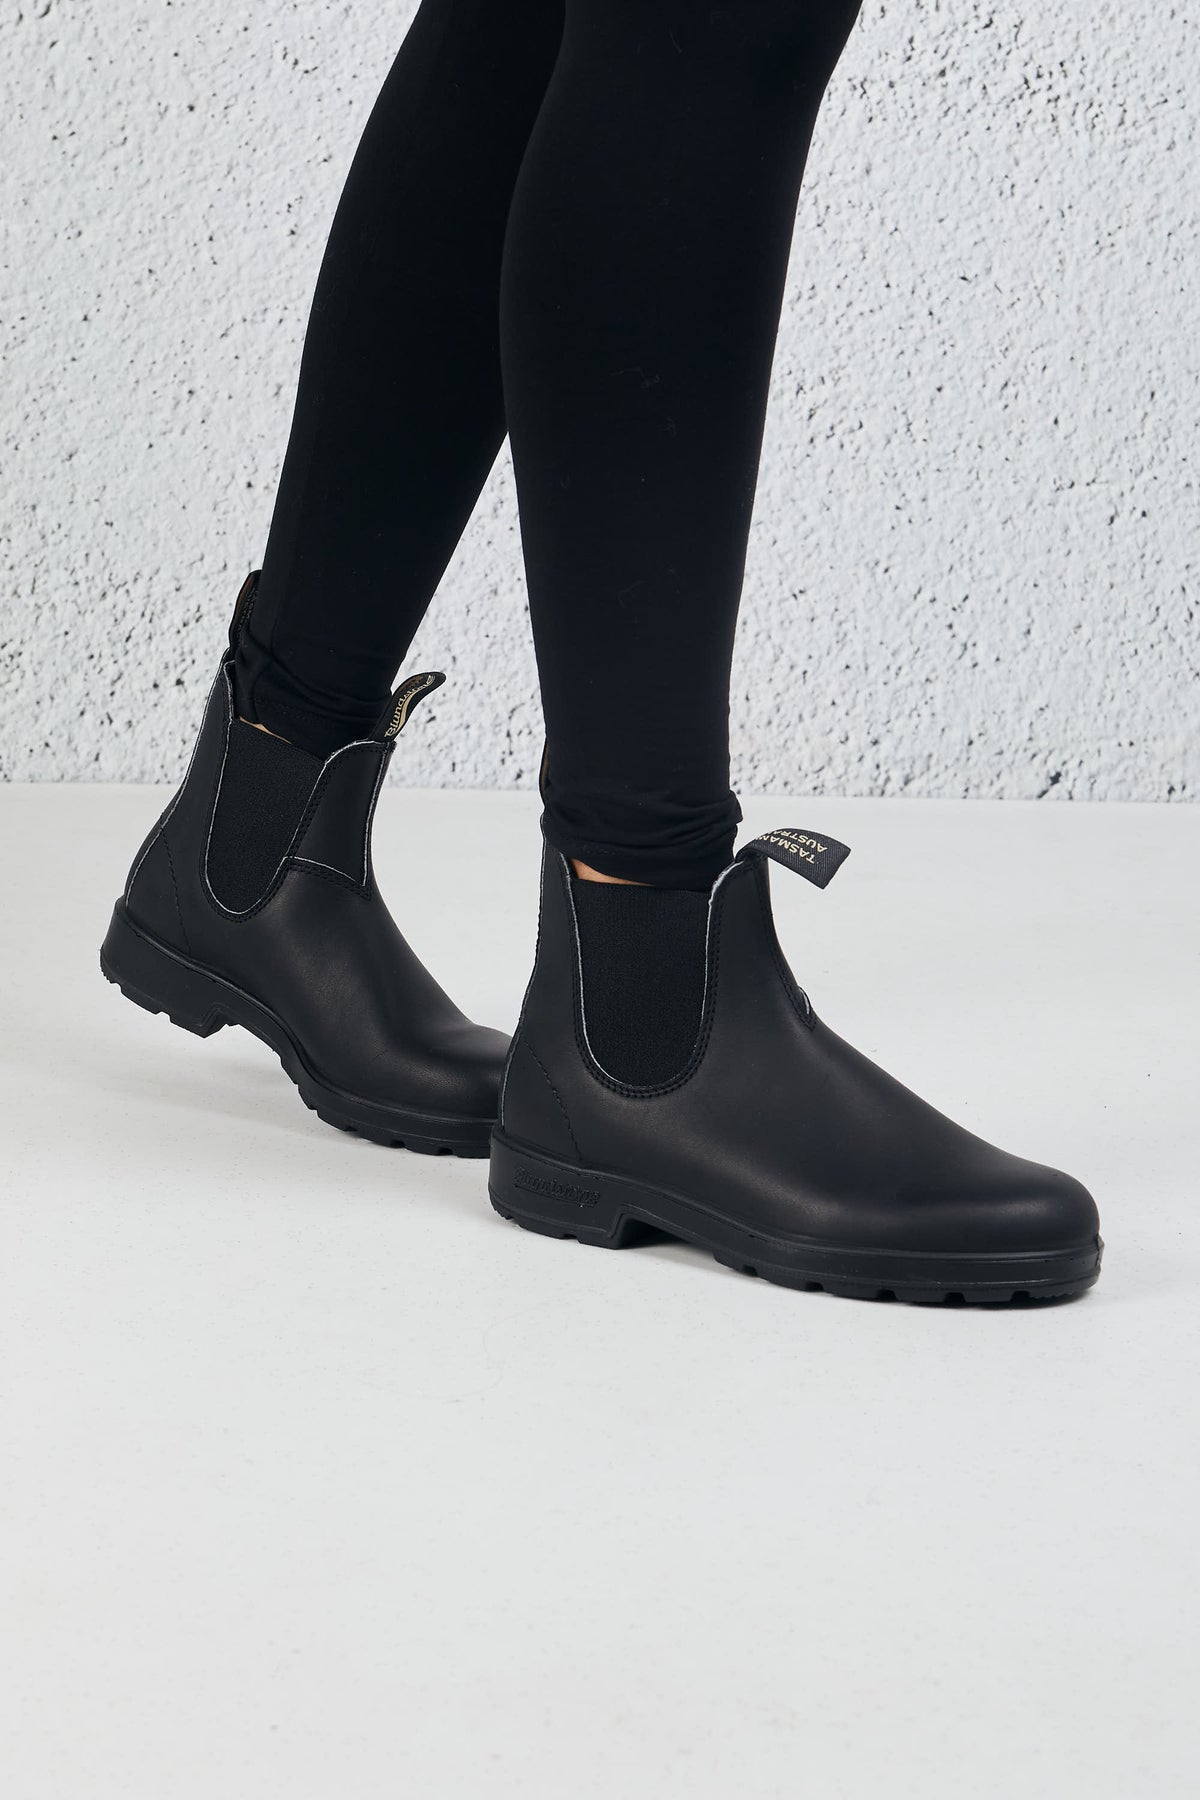 Blundstone Boot Black Leather Nero Donna - 4